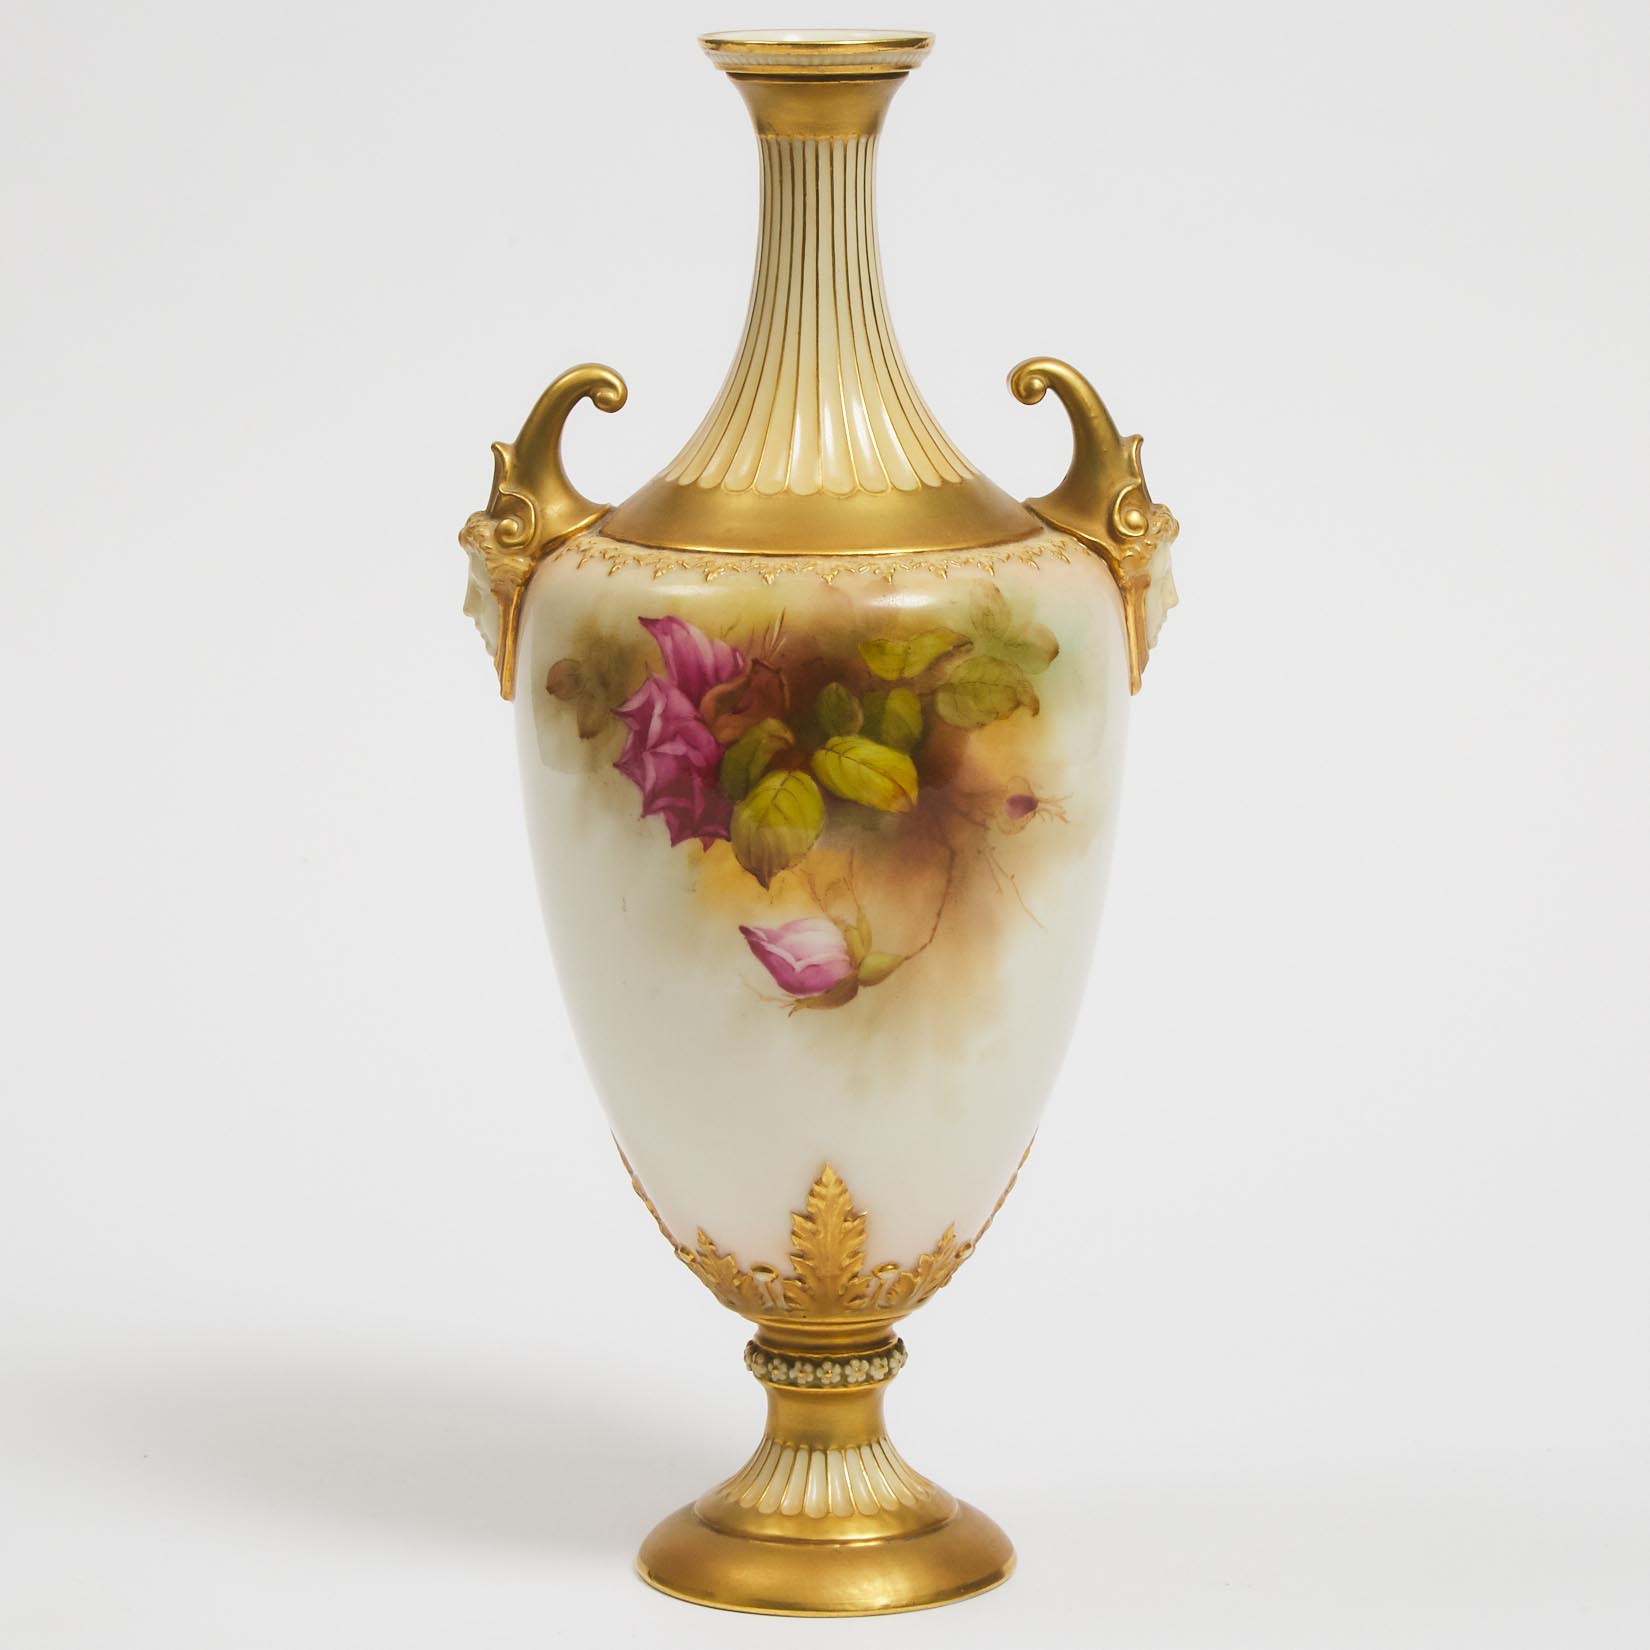 Royal Worcester Pink Roses Two-Handled Vase, Reginald Austin, 1912